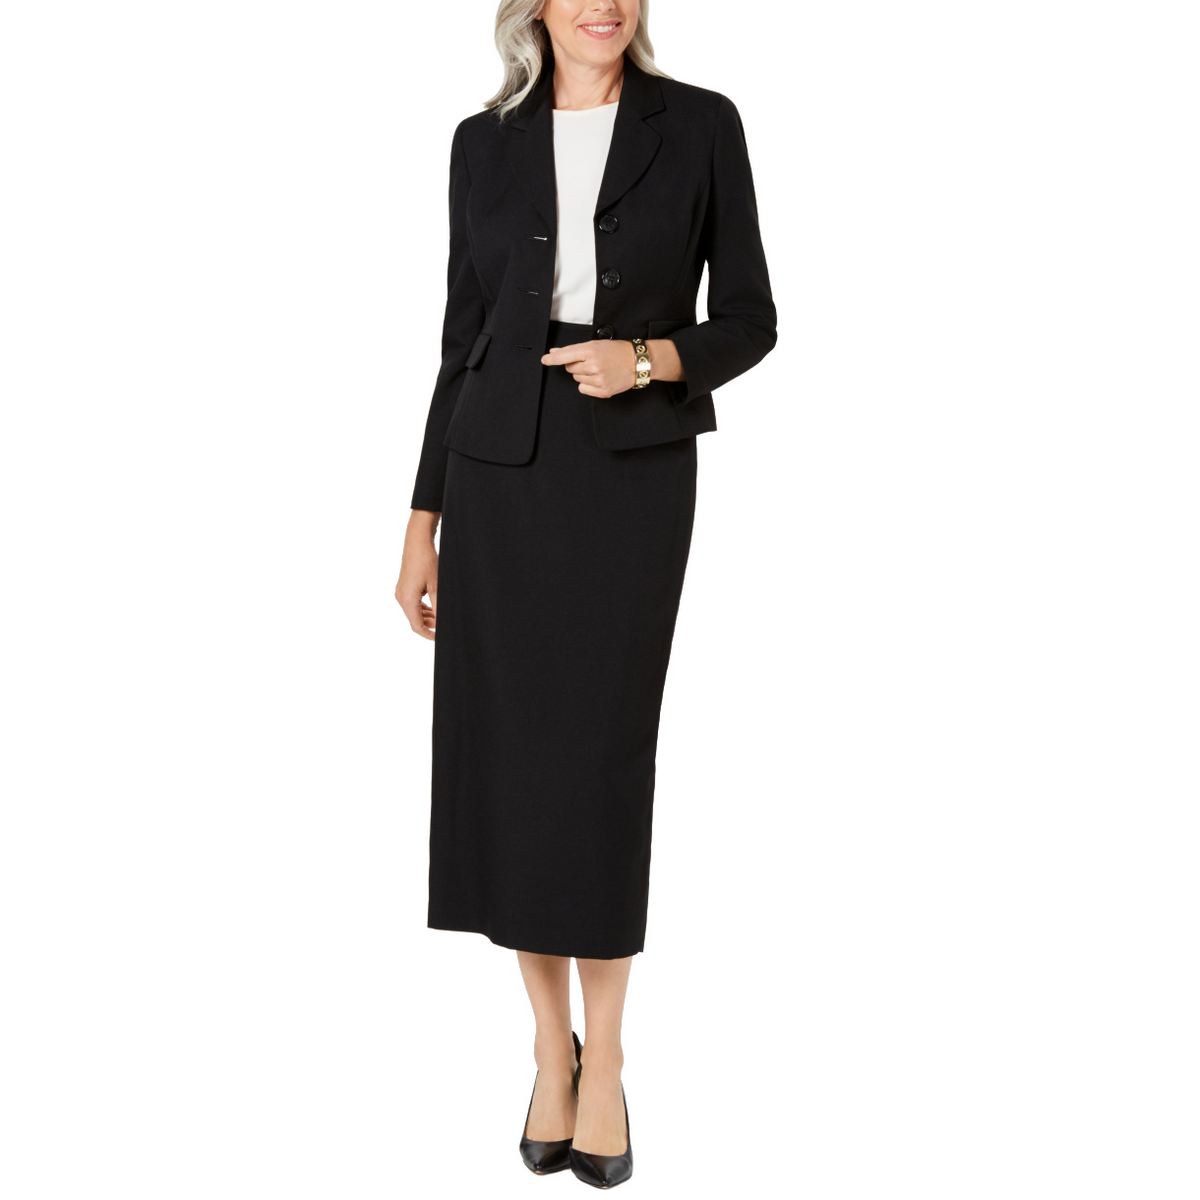 LE SUIT NEW Women's Black Solid Three-button Column Skirt Suit Two-Piece 8 TEDO $39.99 - PicClick